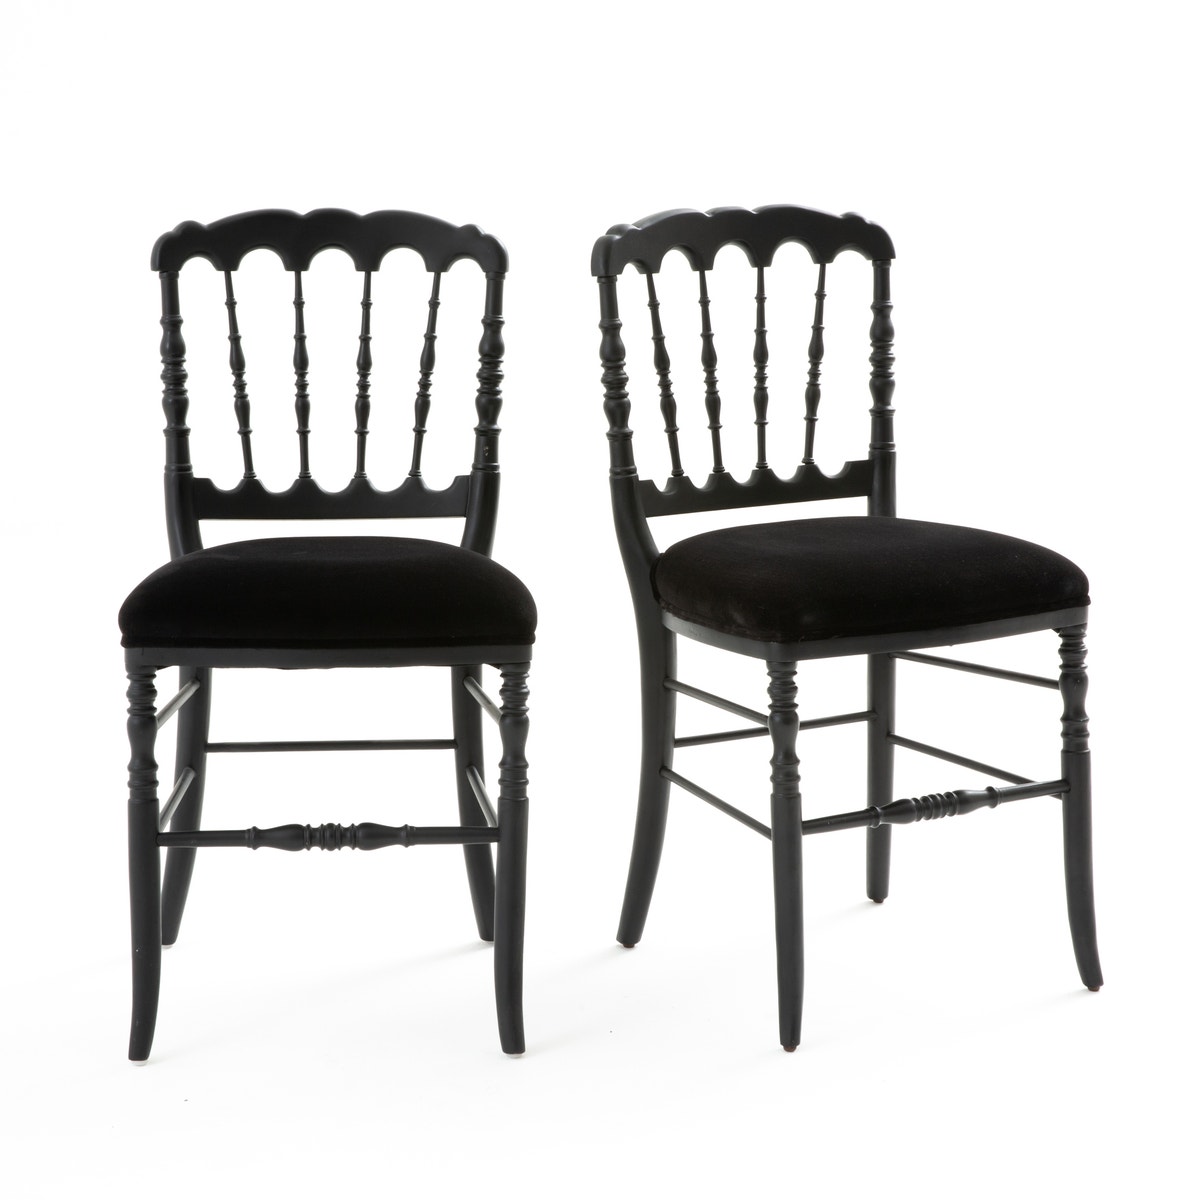 Σπίτι > Έπιπλα > Τραπεζαρία > Καρέκλες, σκαμπό, πάγκοι > Καρέκλες Καρέκλα σε στυλ Napoleon III